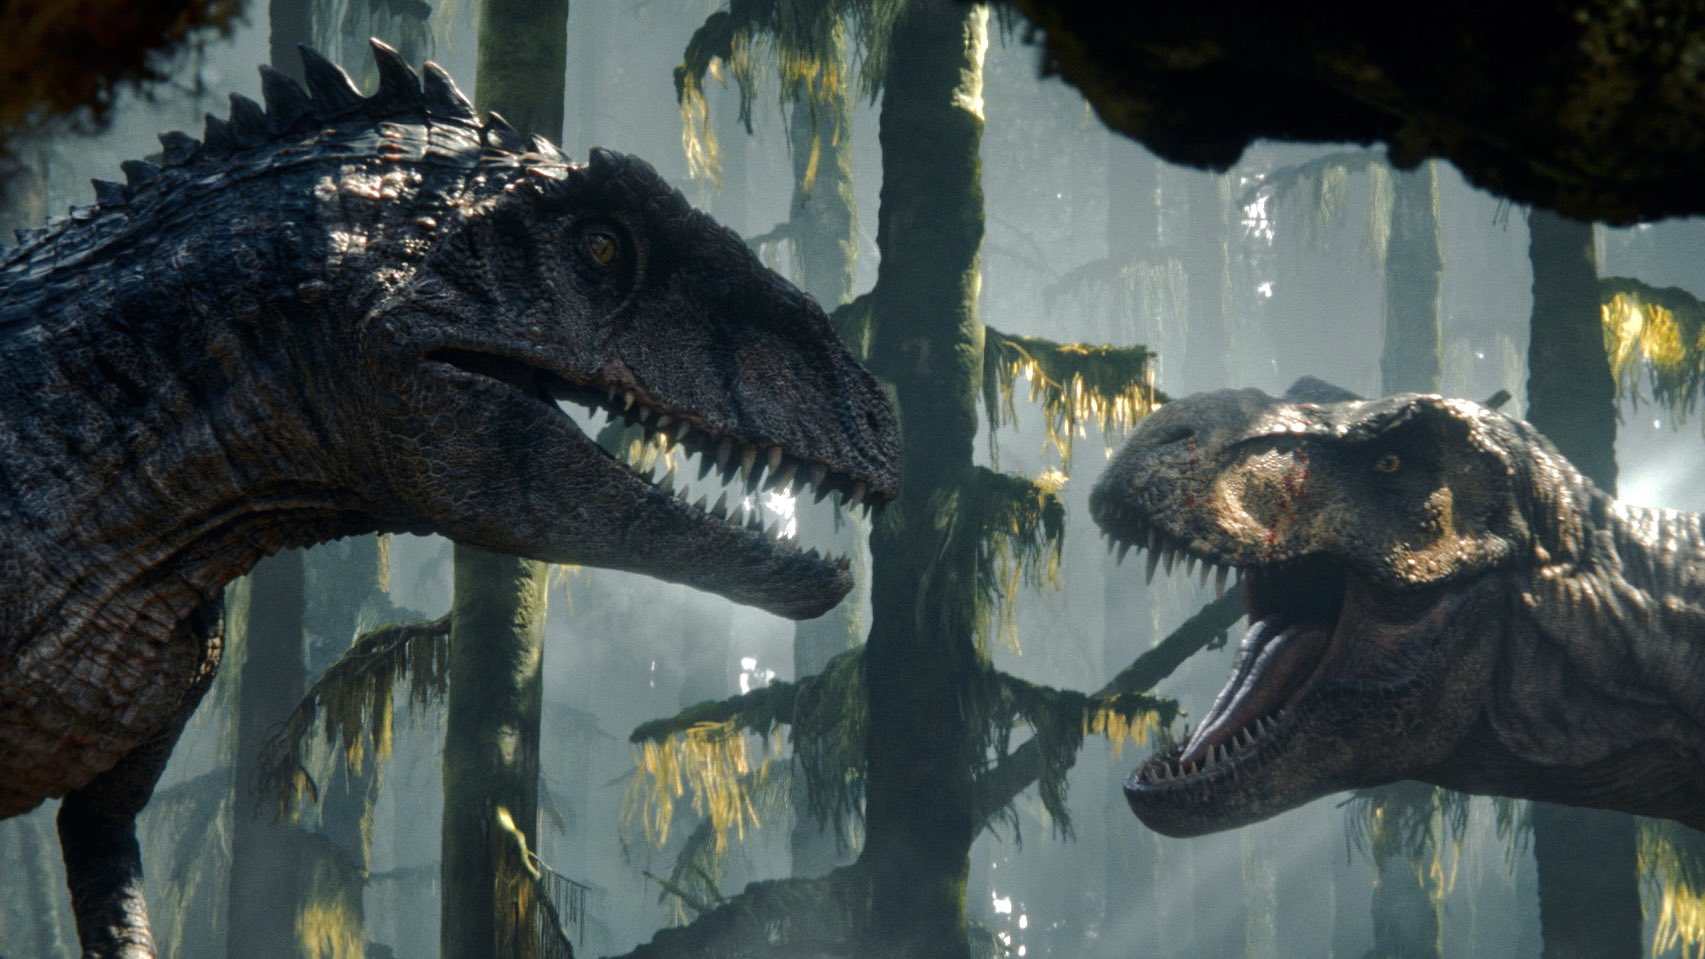 Jurassic World 4: EXTINCTION, Teaser Trailer